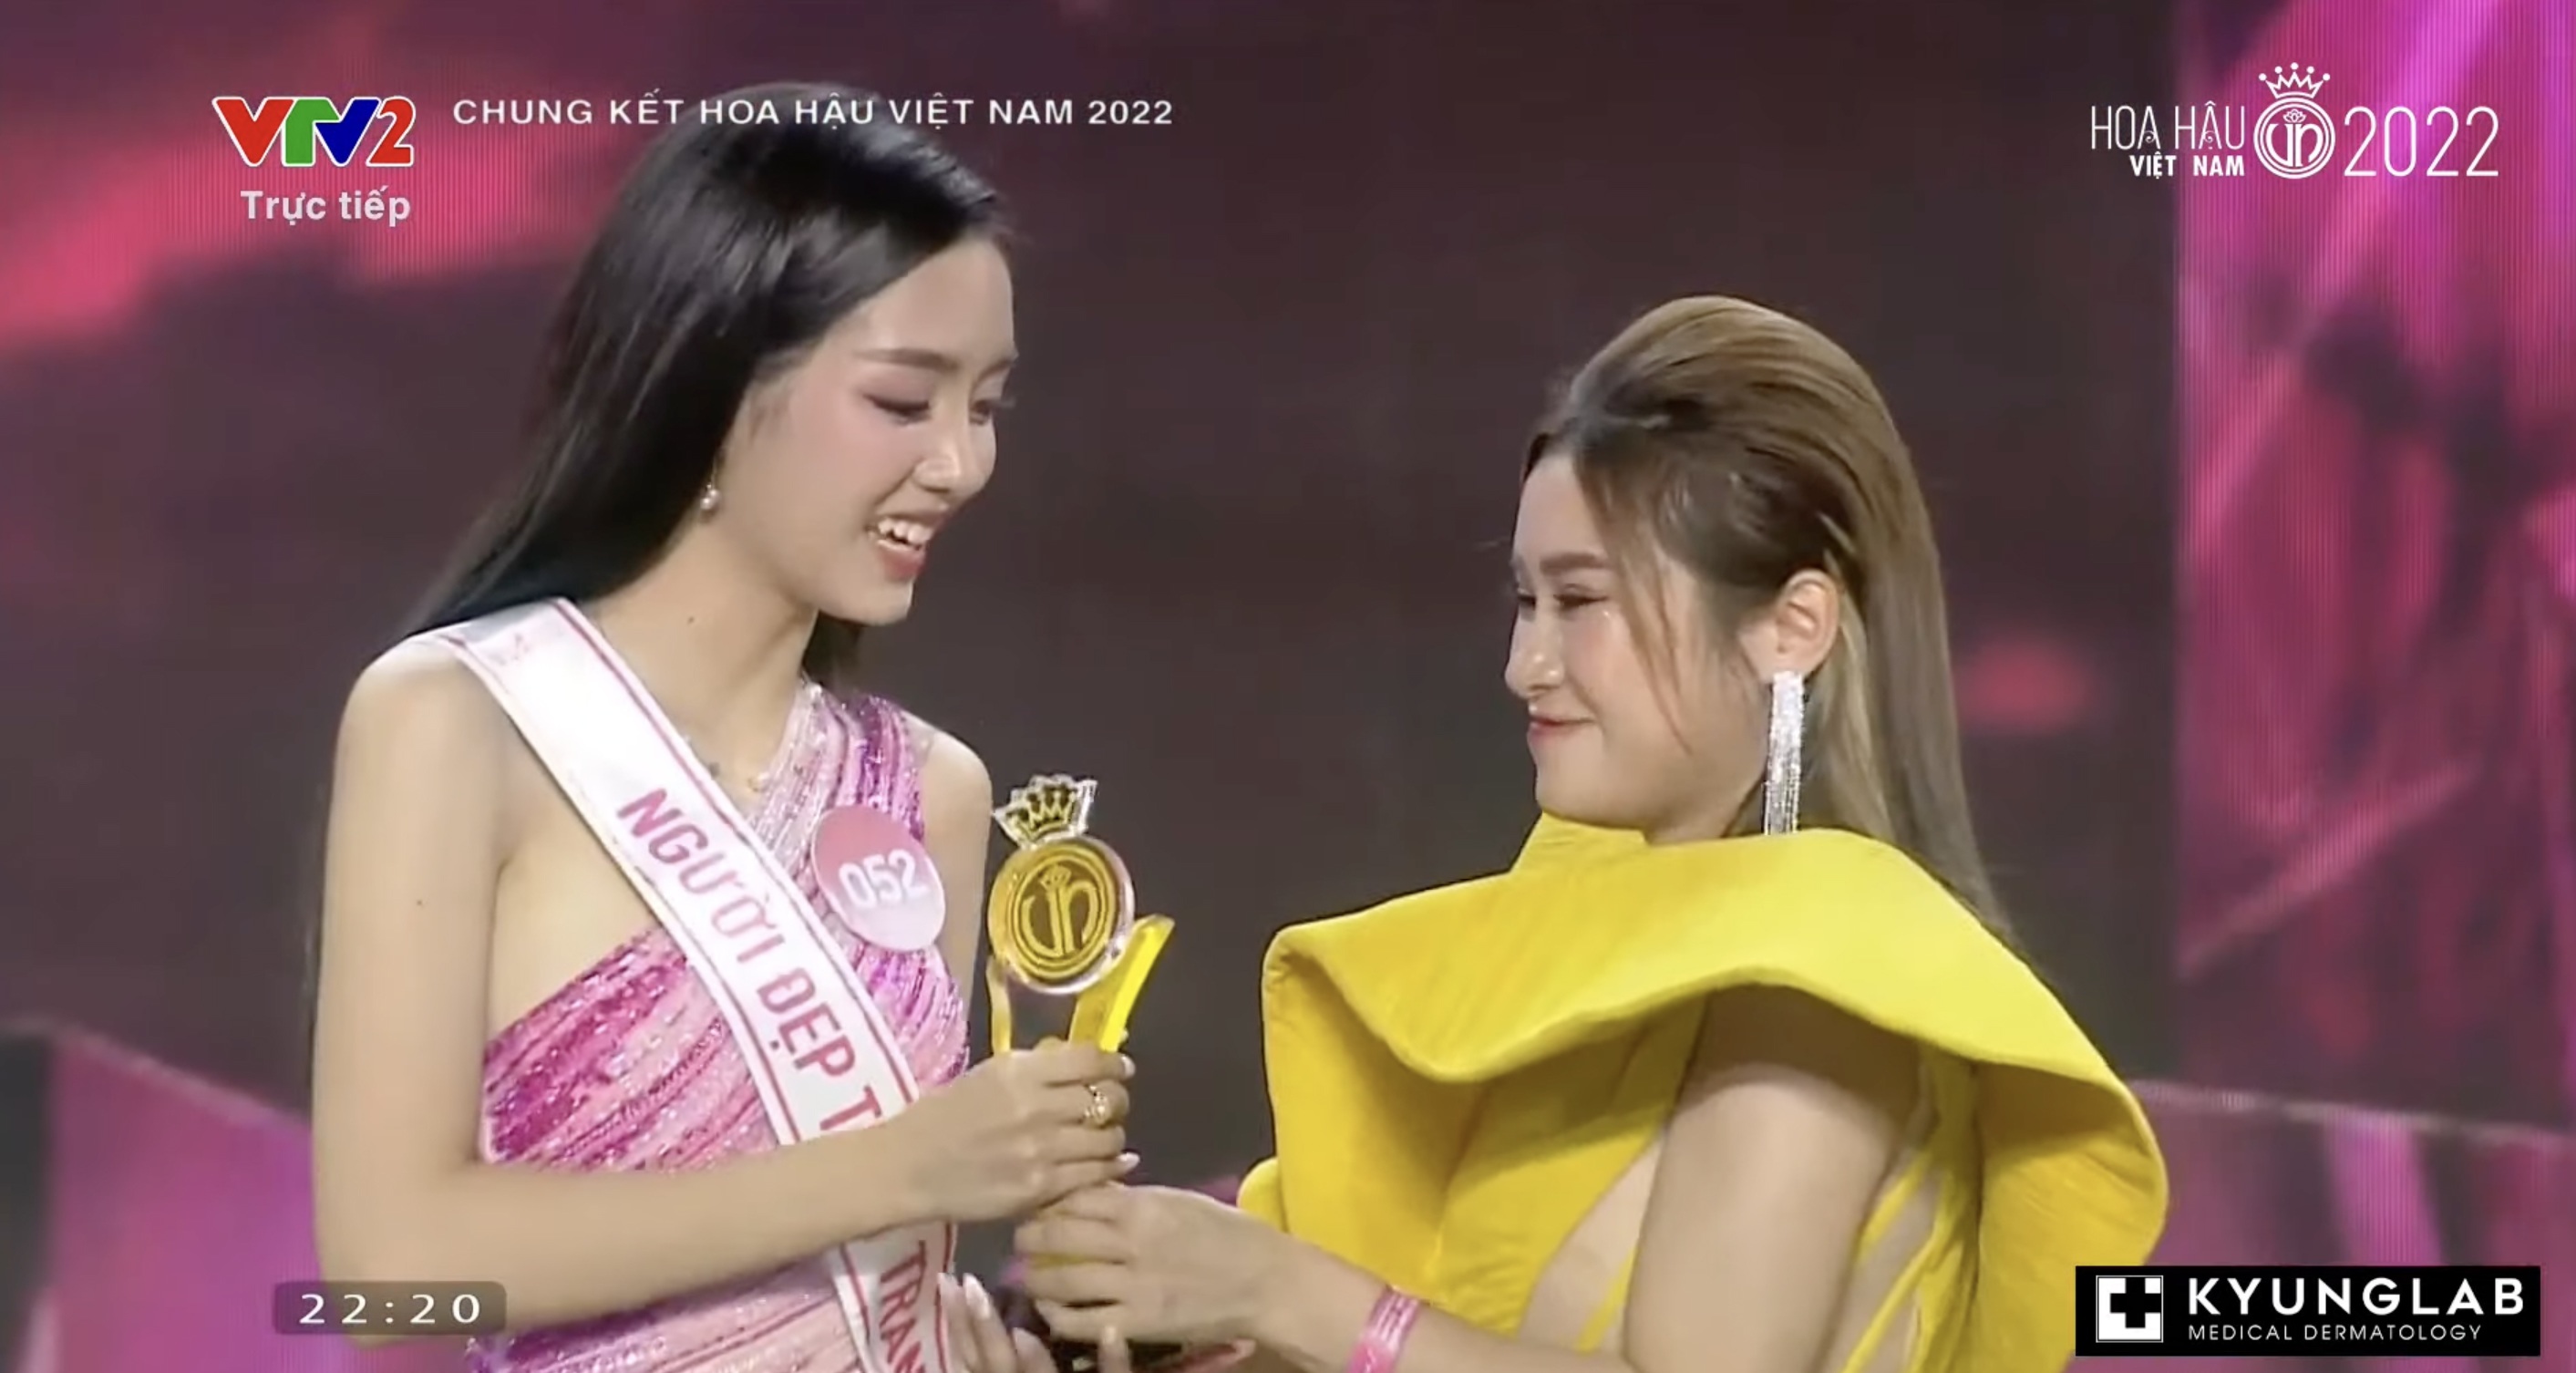 Chung kết Hoa hậu Việt Nam 2022: Tân Hoa hậu chính thức gọi tên Huỳnh Thị Thanh Thuỷ - 10